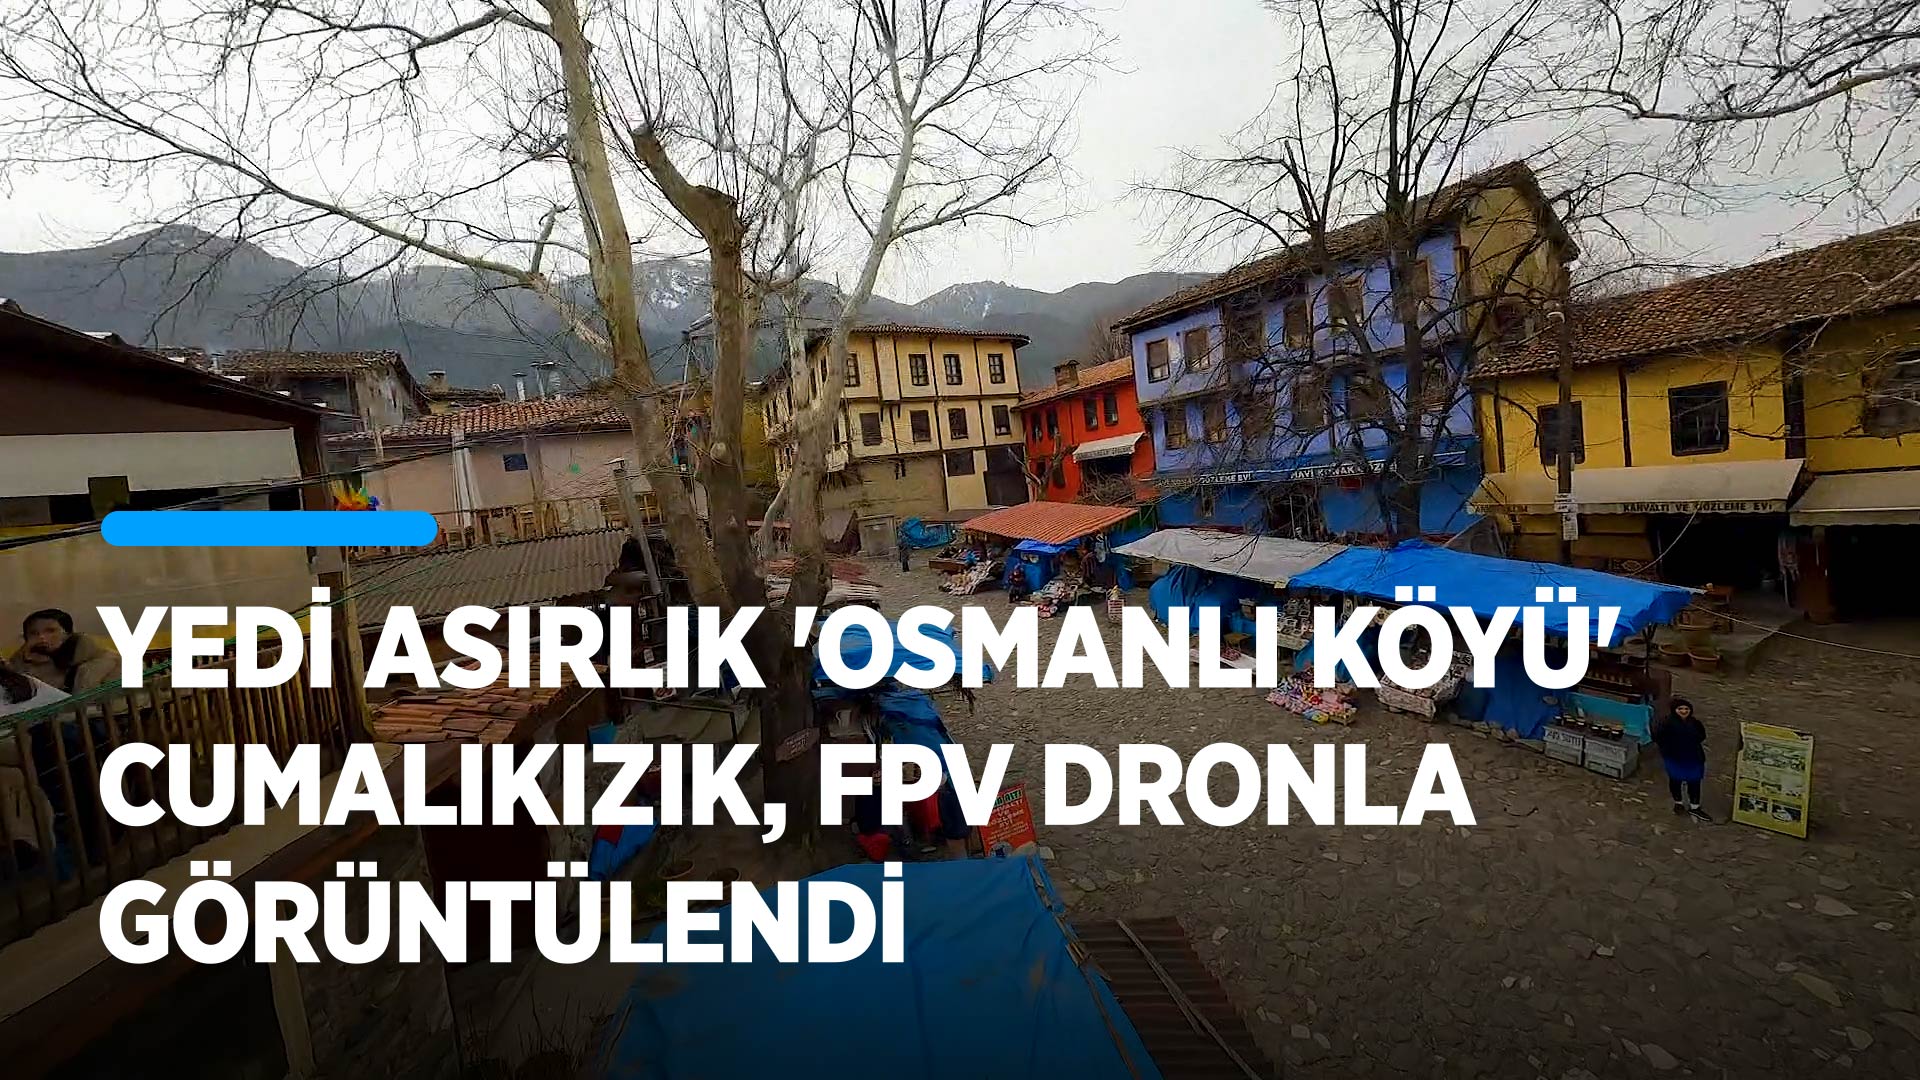 Yedi asırlık "Osmanlı köyü" Cumalıkızık, FPV dronla görüntülendi